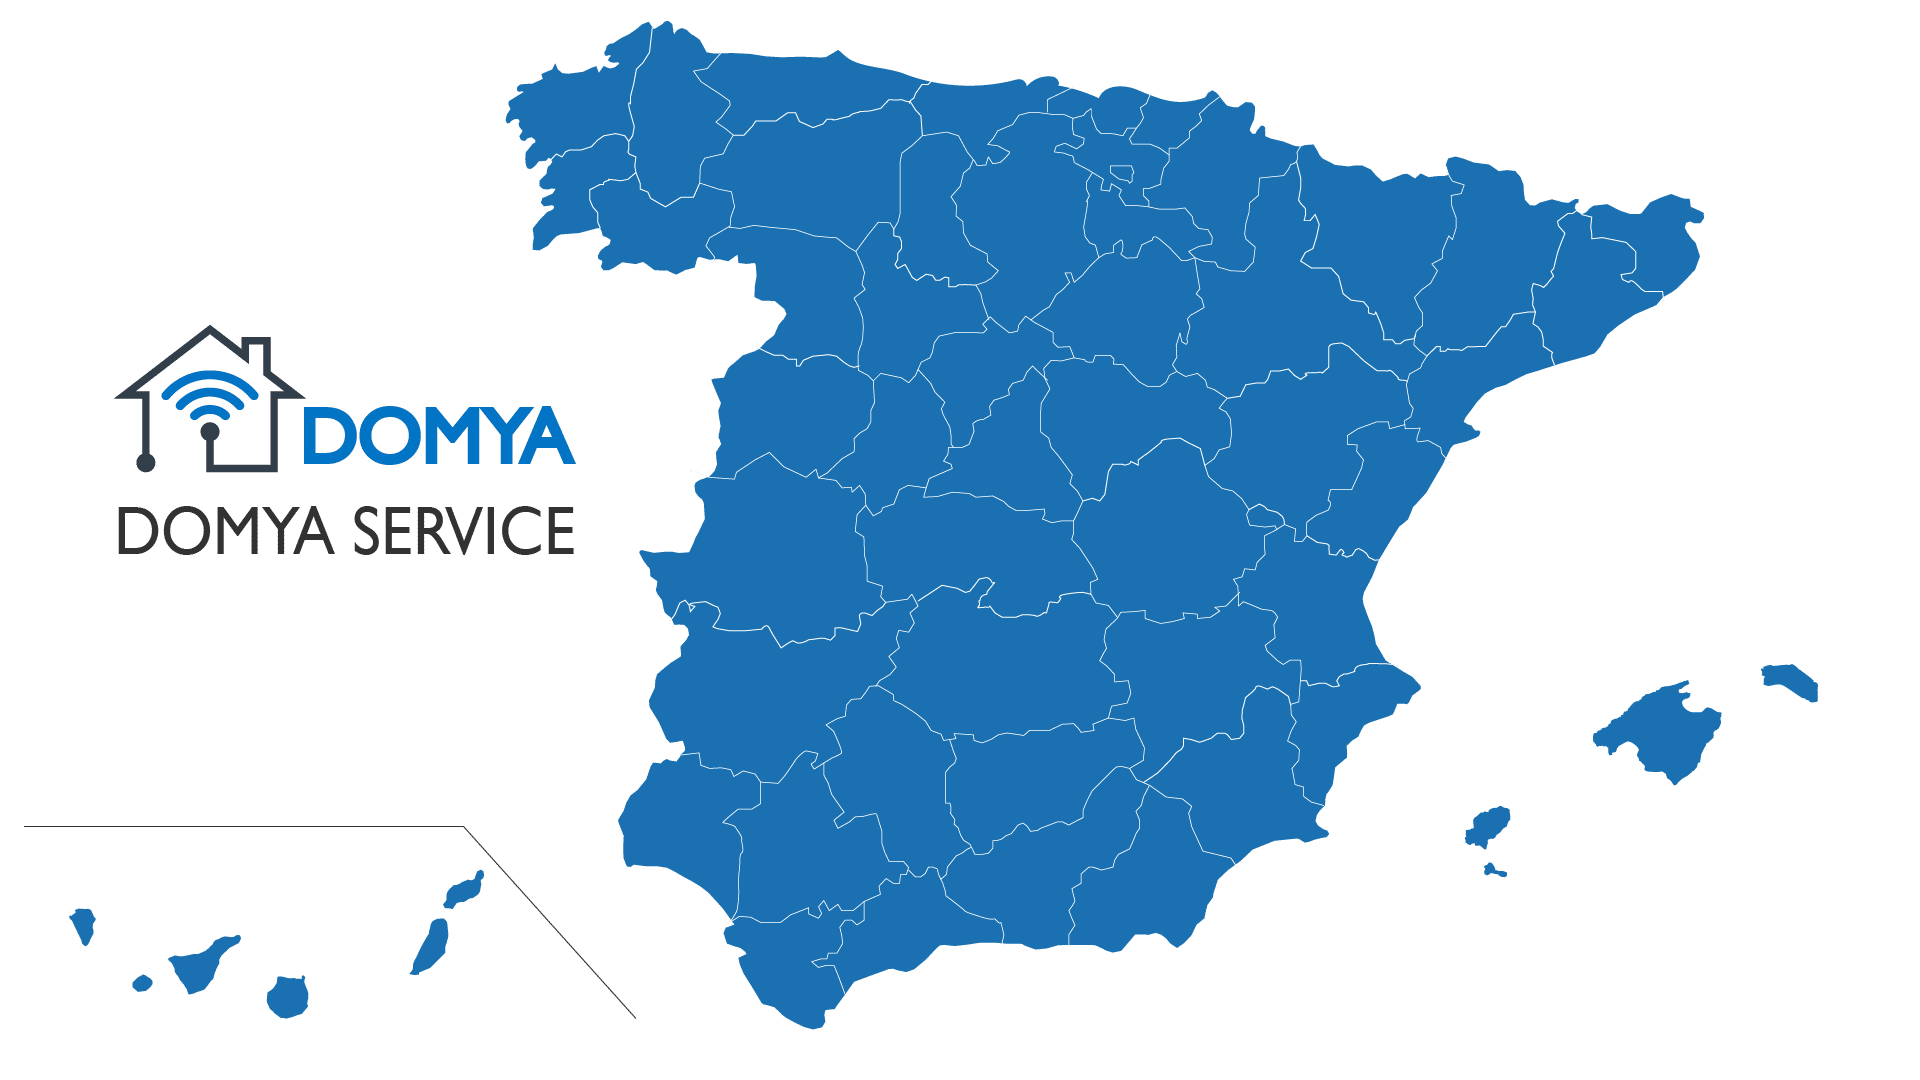 puntos domya service espana